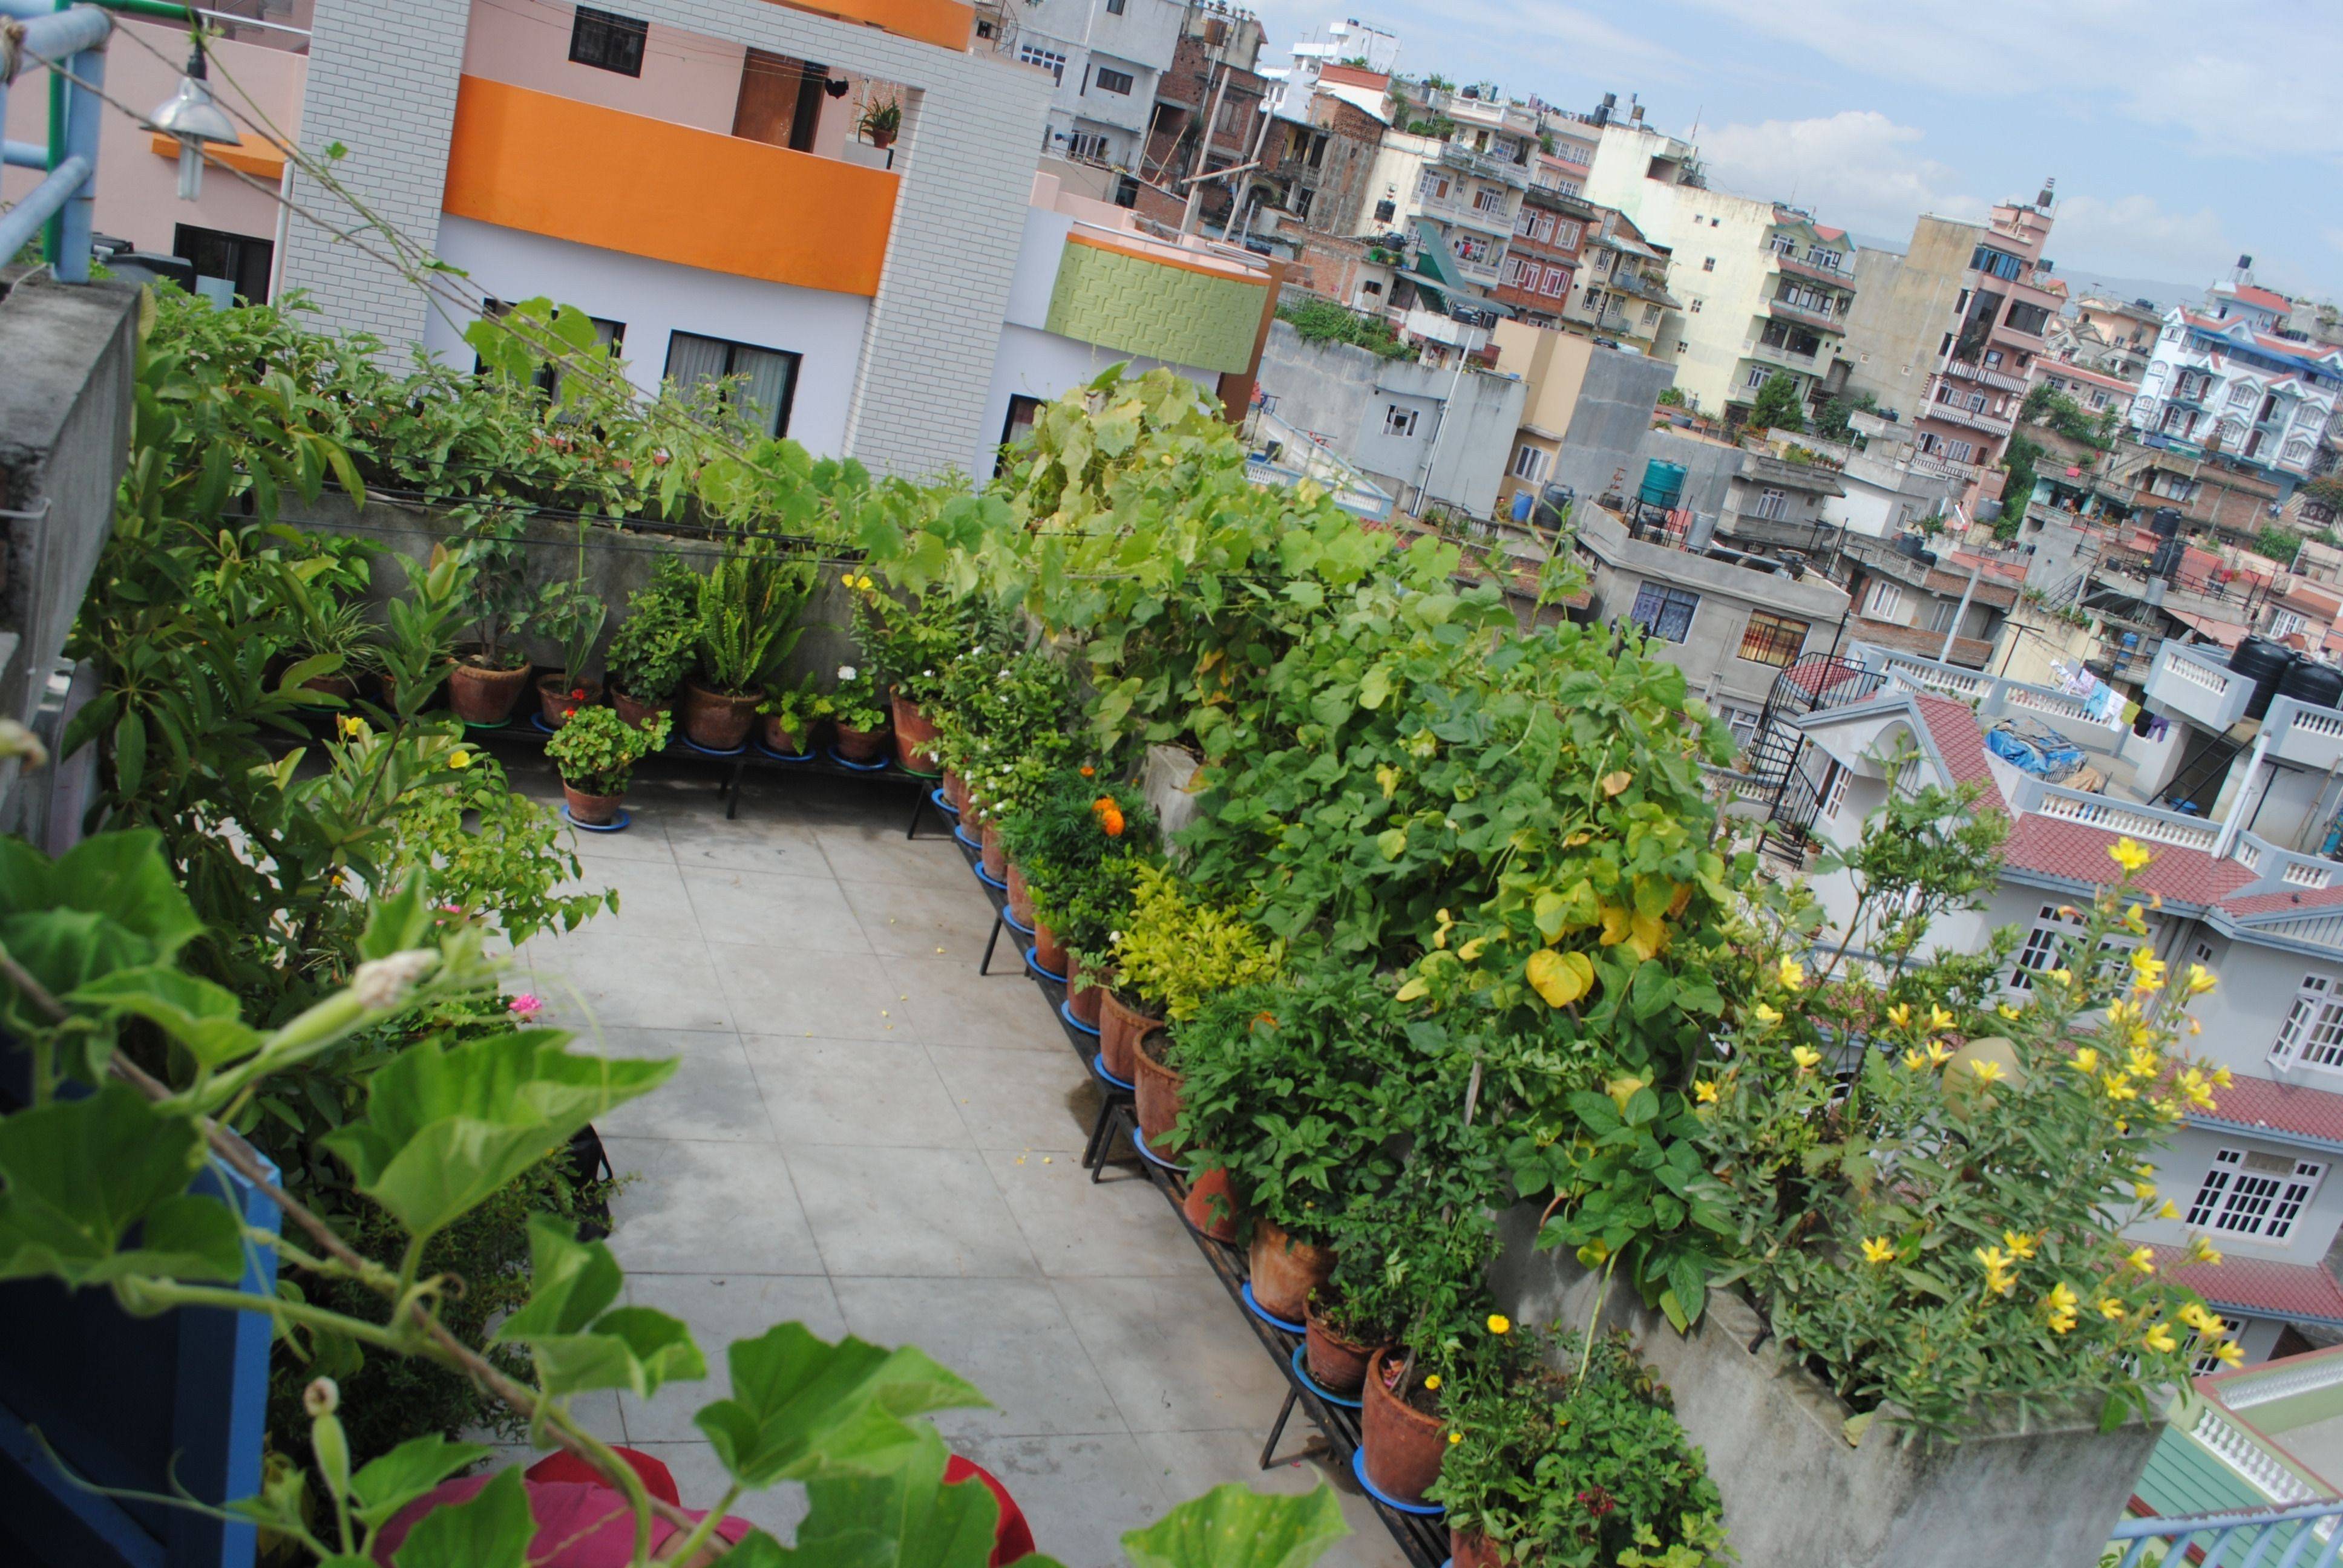 Rooftop Terrace Vegetable Garden Ideas Perfect Image Resource Duwikw